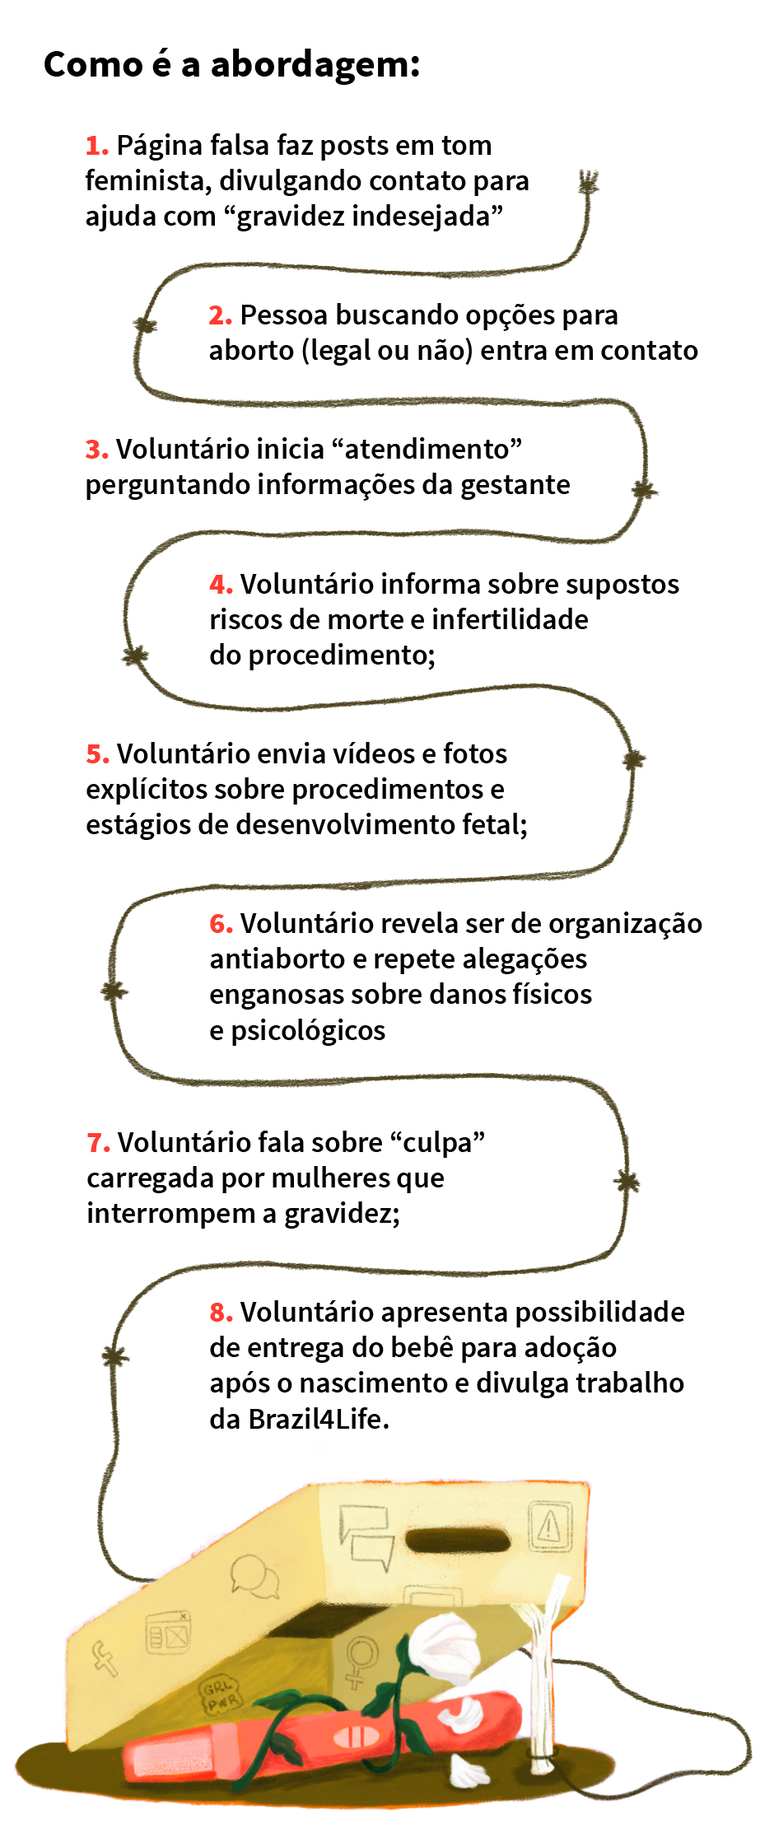 Fluxograma mostra como é a abordagem dos voluntários da Brazil4Life com as mulheres (Luiz Fernando Menezes/ Aos Fatos)